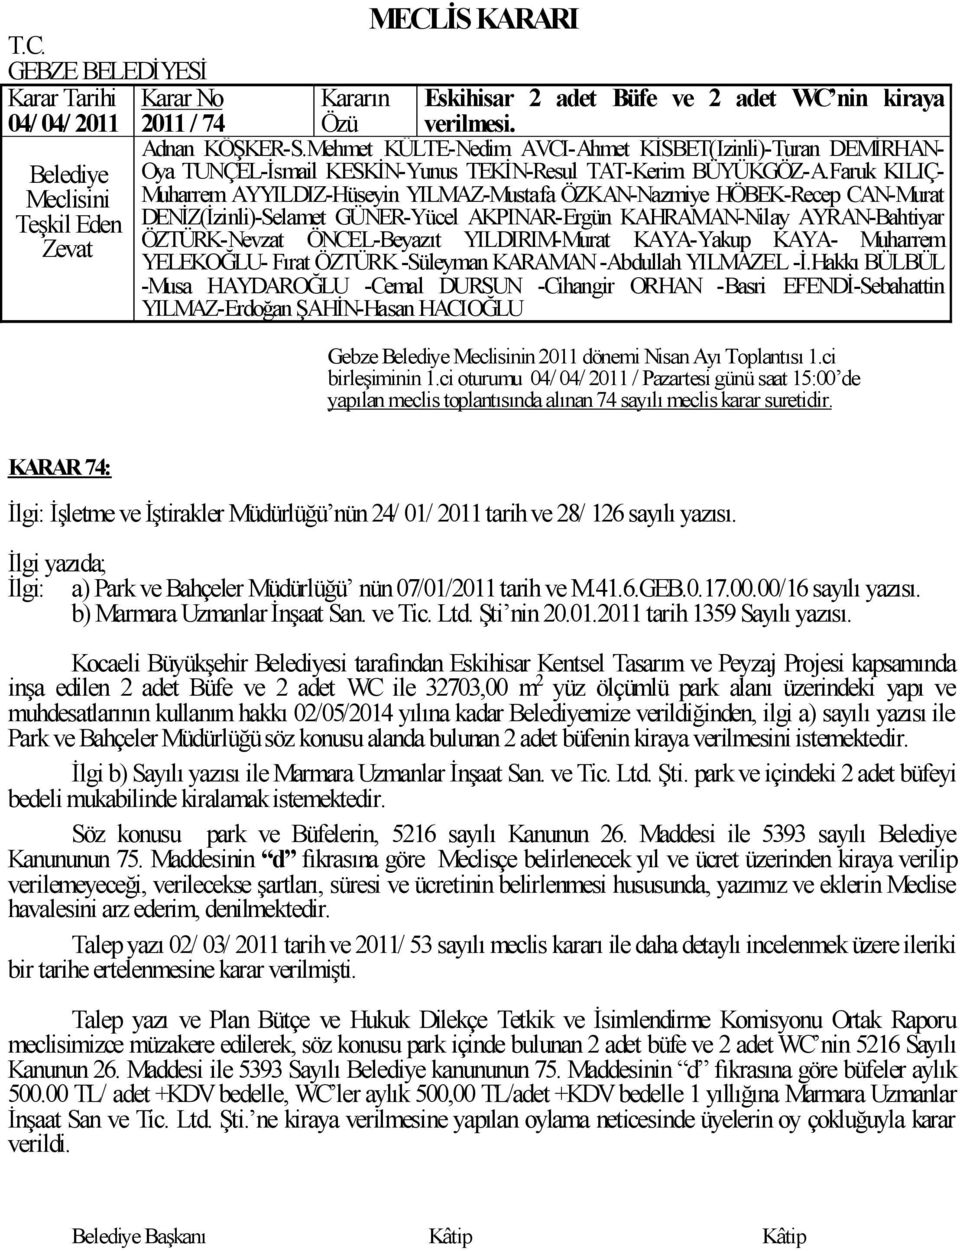 00/16 sayılı yazısı. b) Marmara Uzmanlar ĠnĢaat San. ve Tic. Ltd. ġti nin 20.01.2011 tarih 1359 Sayılı yazısı.